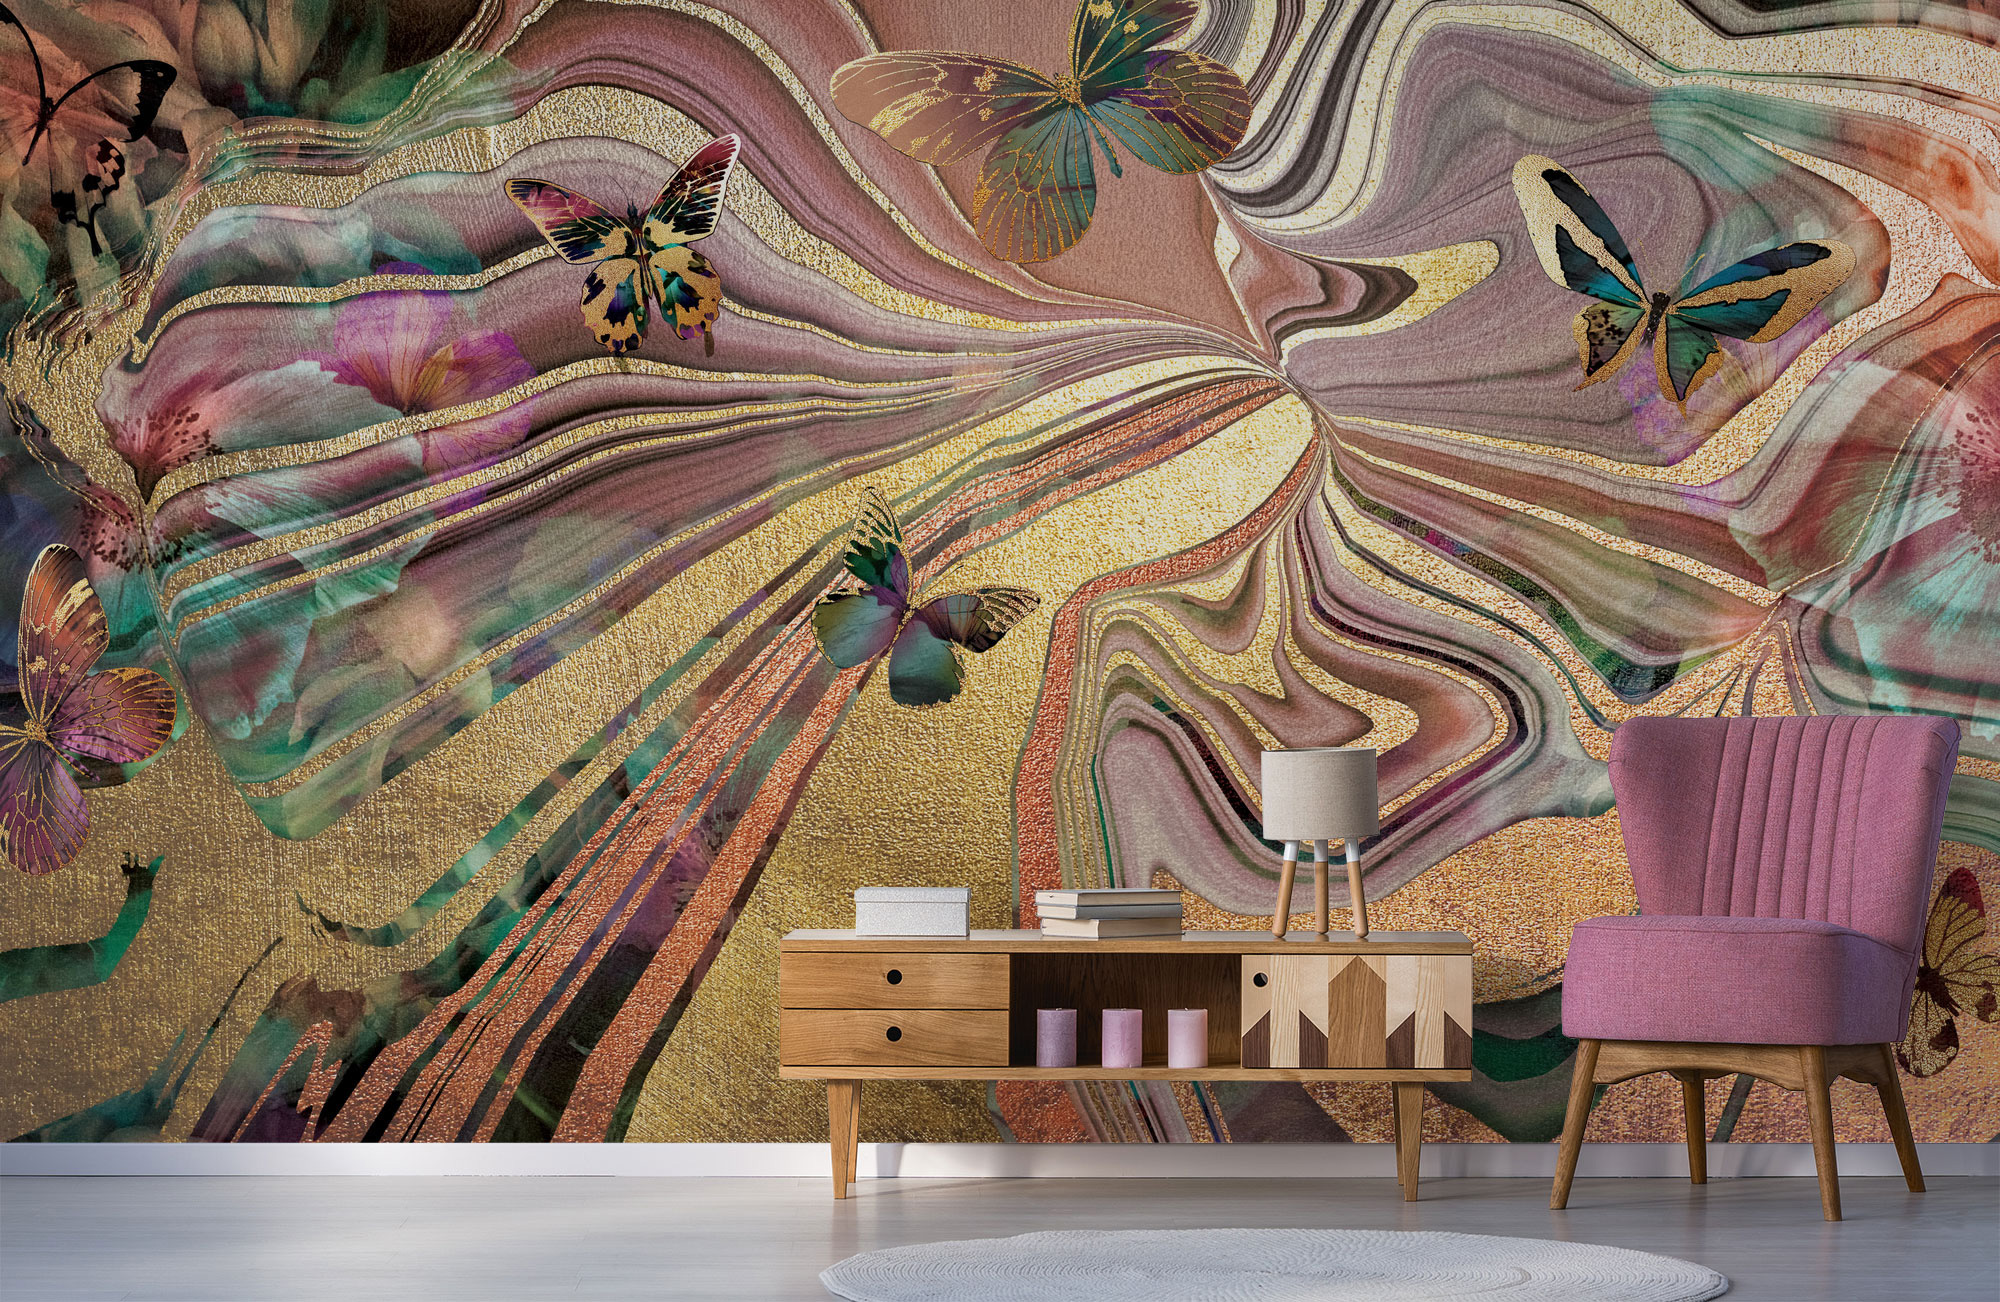 Bạn đang tìm kiếm mẫu giấy dán tường hoàn hảo cho ngôi nhà của mình? Nghệ sĩ Geode nổi tiếng đã mang lại nhiều thiết kế giấy dán tường mới và độc đáo để bạn tha hồ lựa chọn. Với sự kết hợp tuyệt vời giữa màu sắc và họa tiết, mỗi tấm giấy dán tường đều là một tác phẩm nghệ thuật.